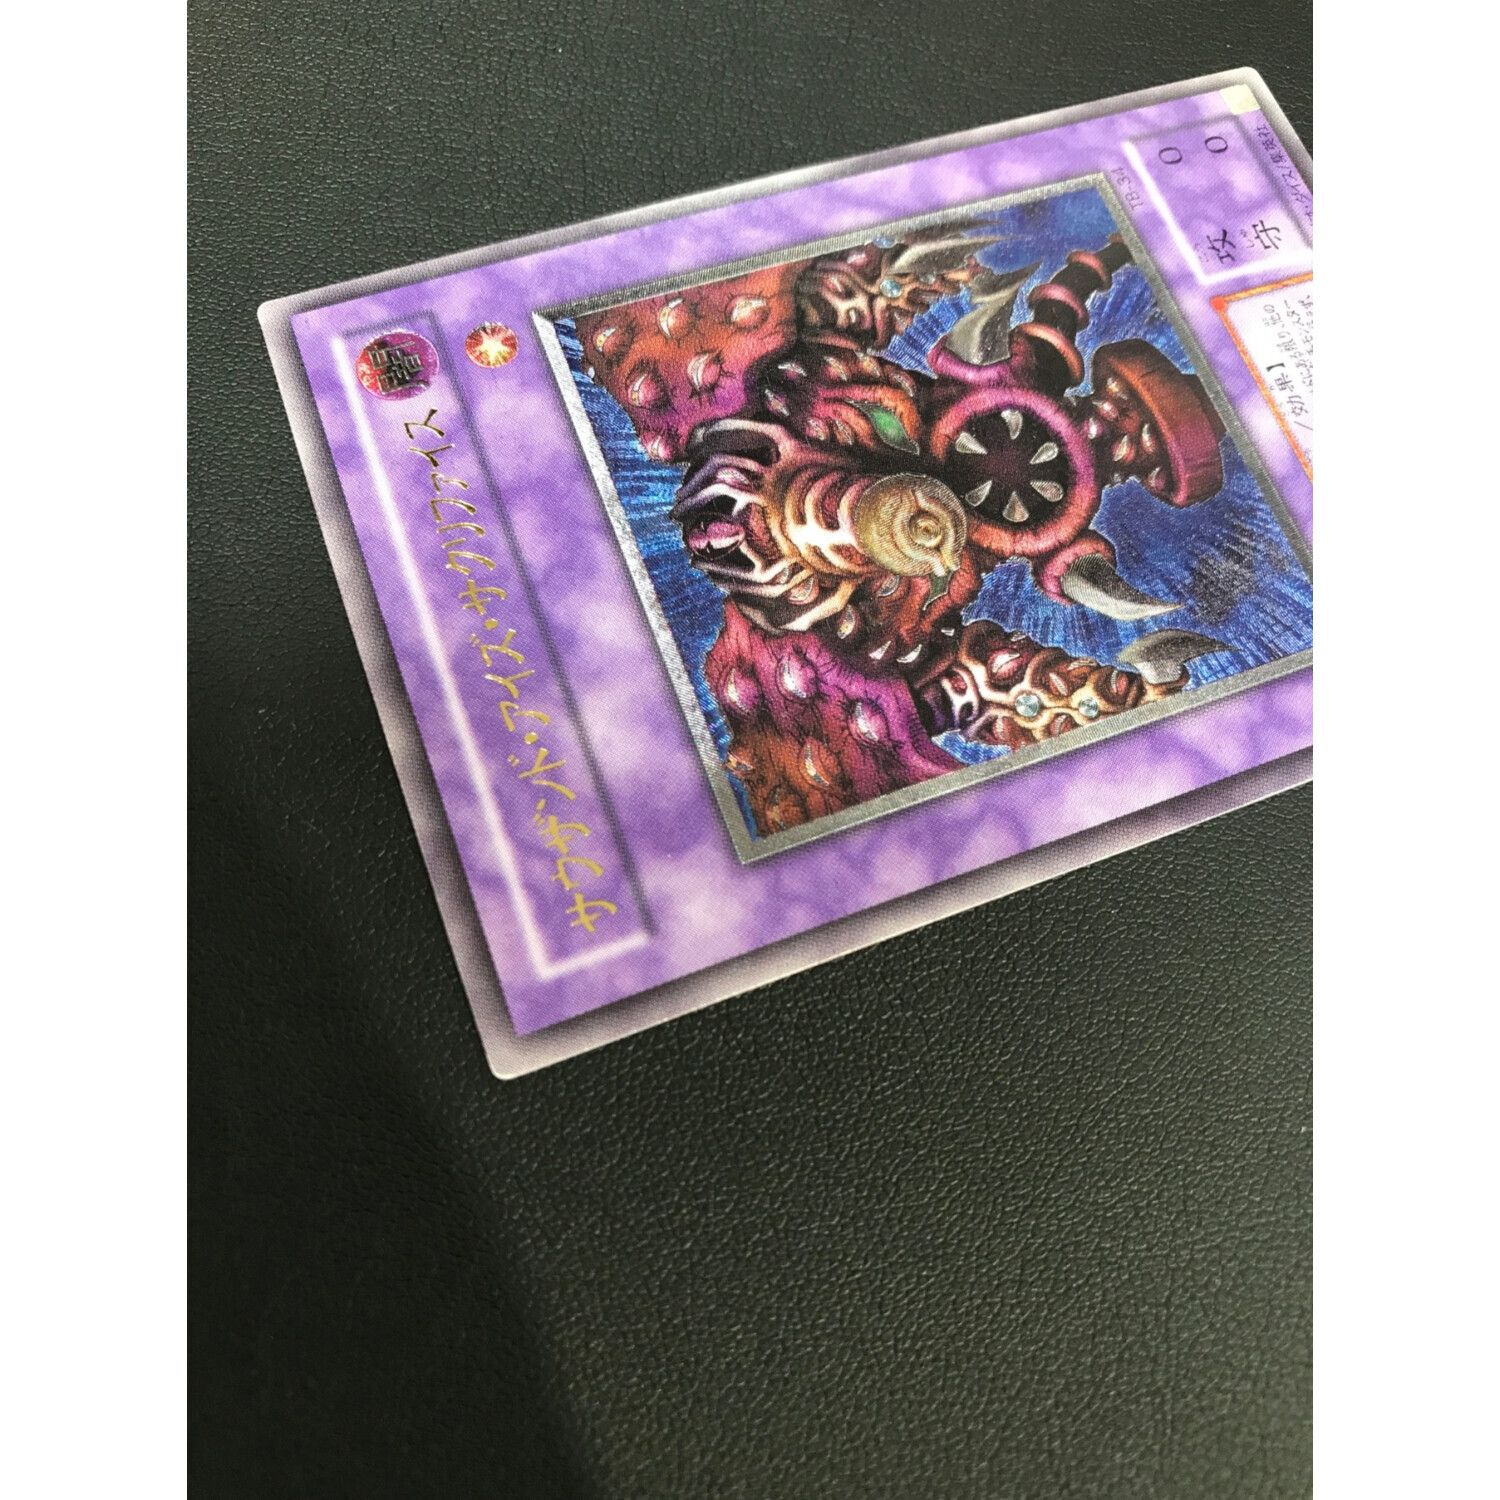 遊戯王カード サウザンド・アイズ・サクリファイス TB-34 